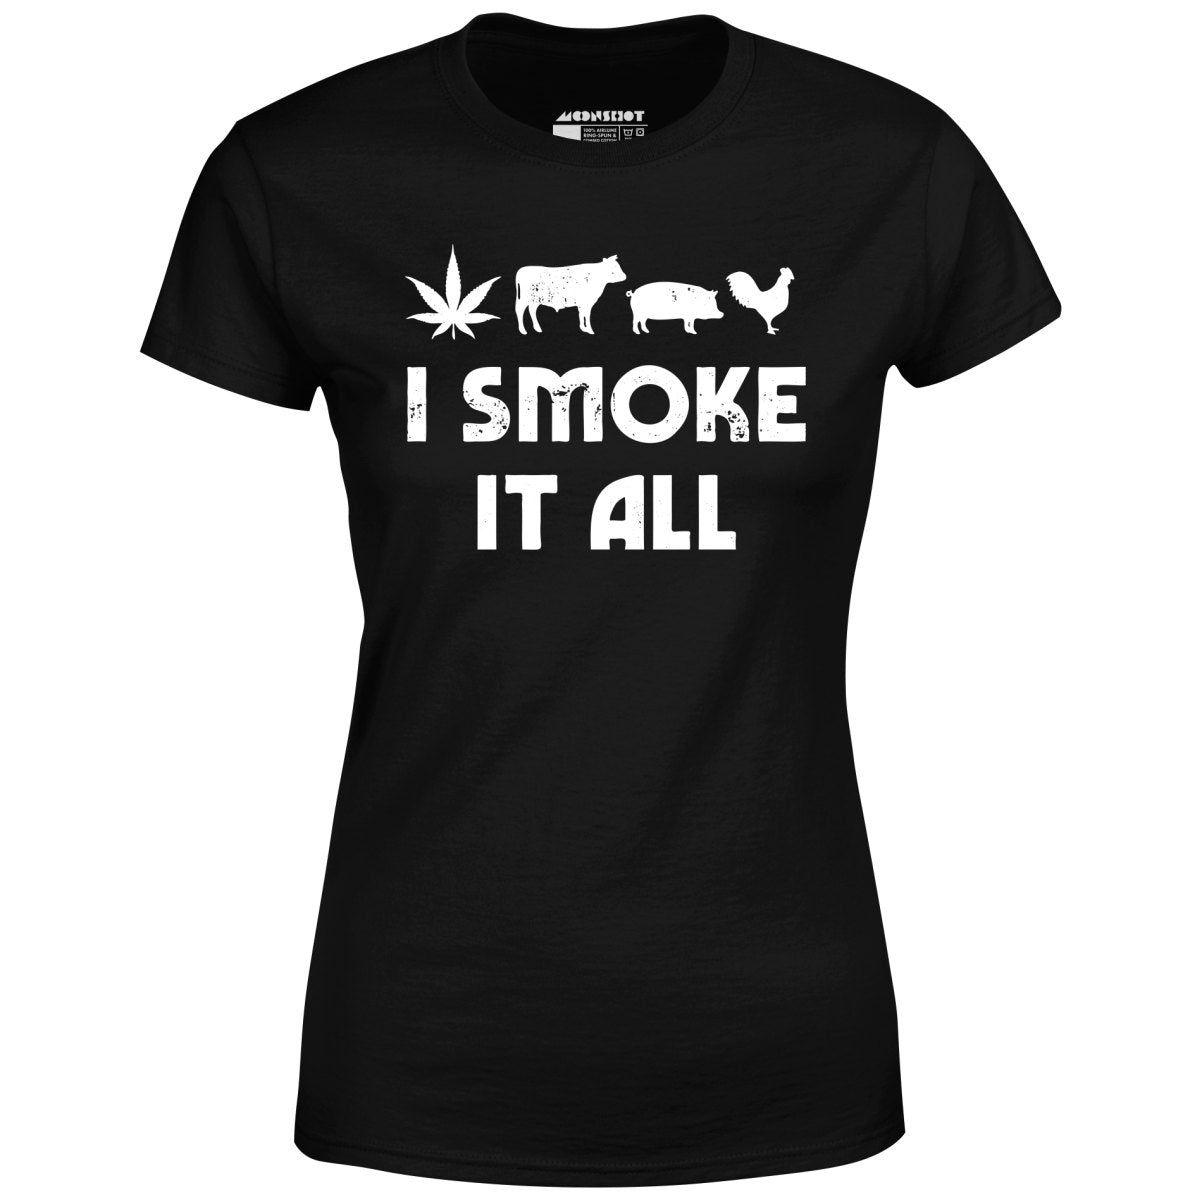 I Smoke it All - Women's T-Shirt